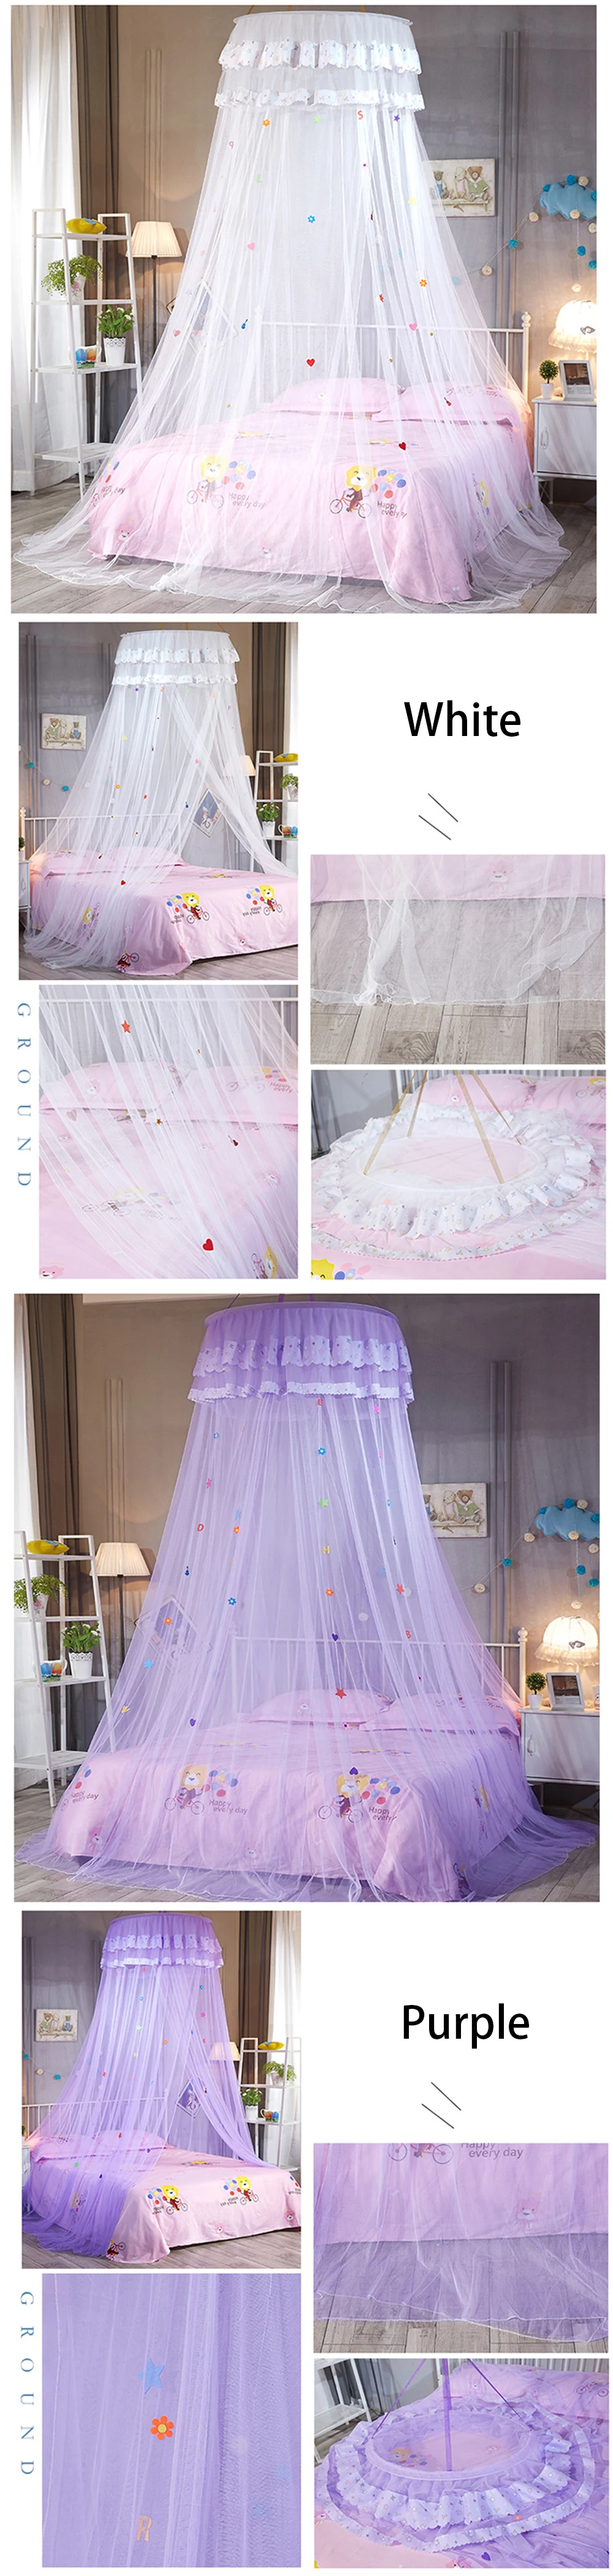 Детский элегантный тюль кровать купольная кровать сетчатый навес круговой Розовый Круглый купол постельные принадлежности москитная сетка для односпальной кровати queen King